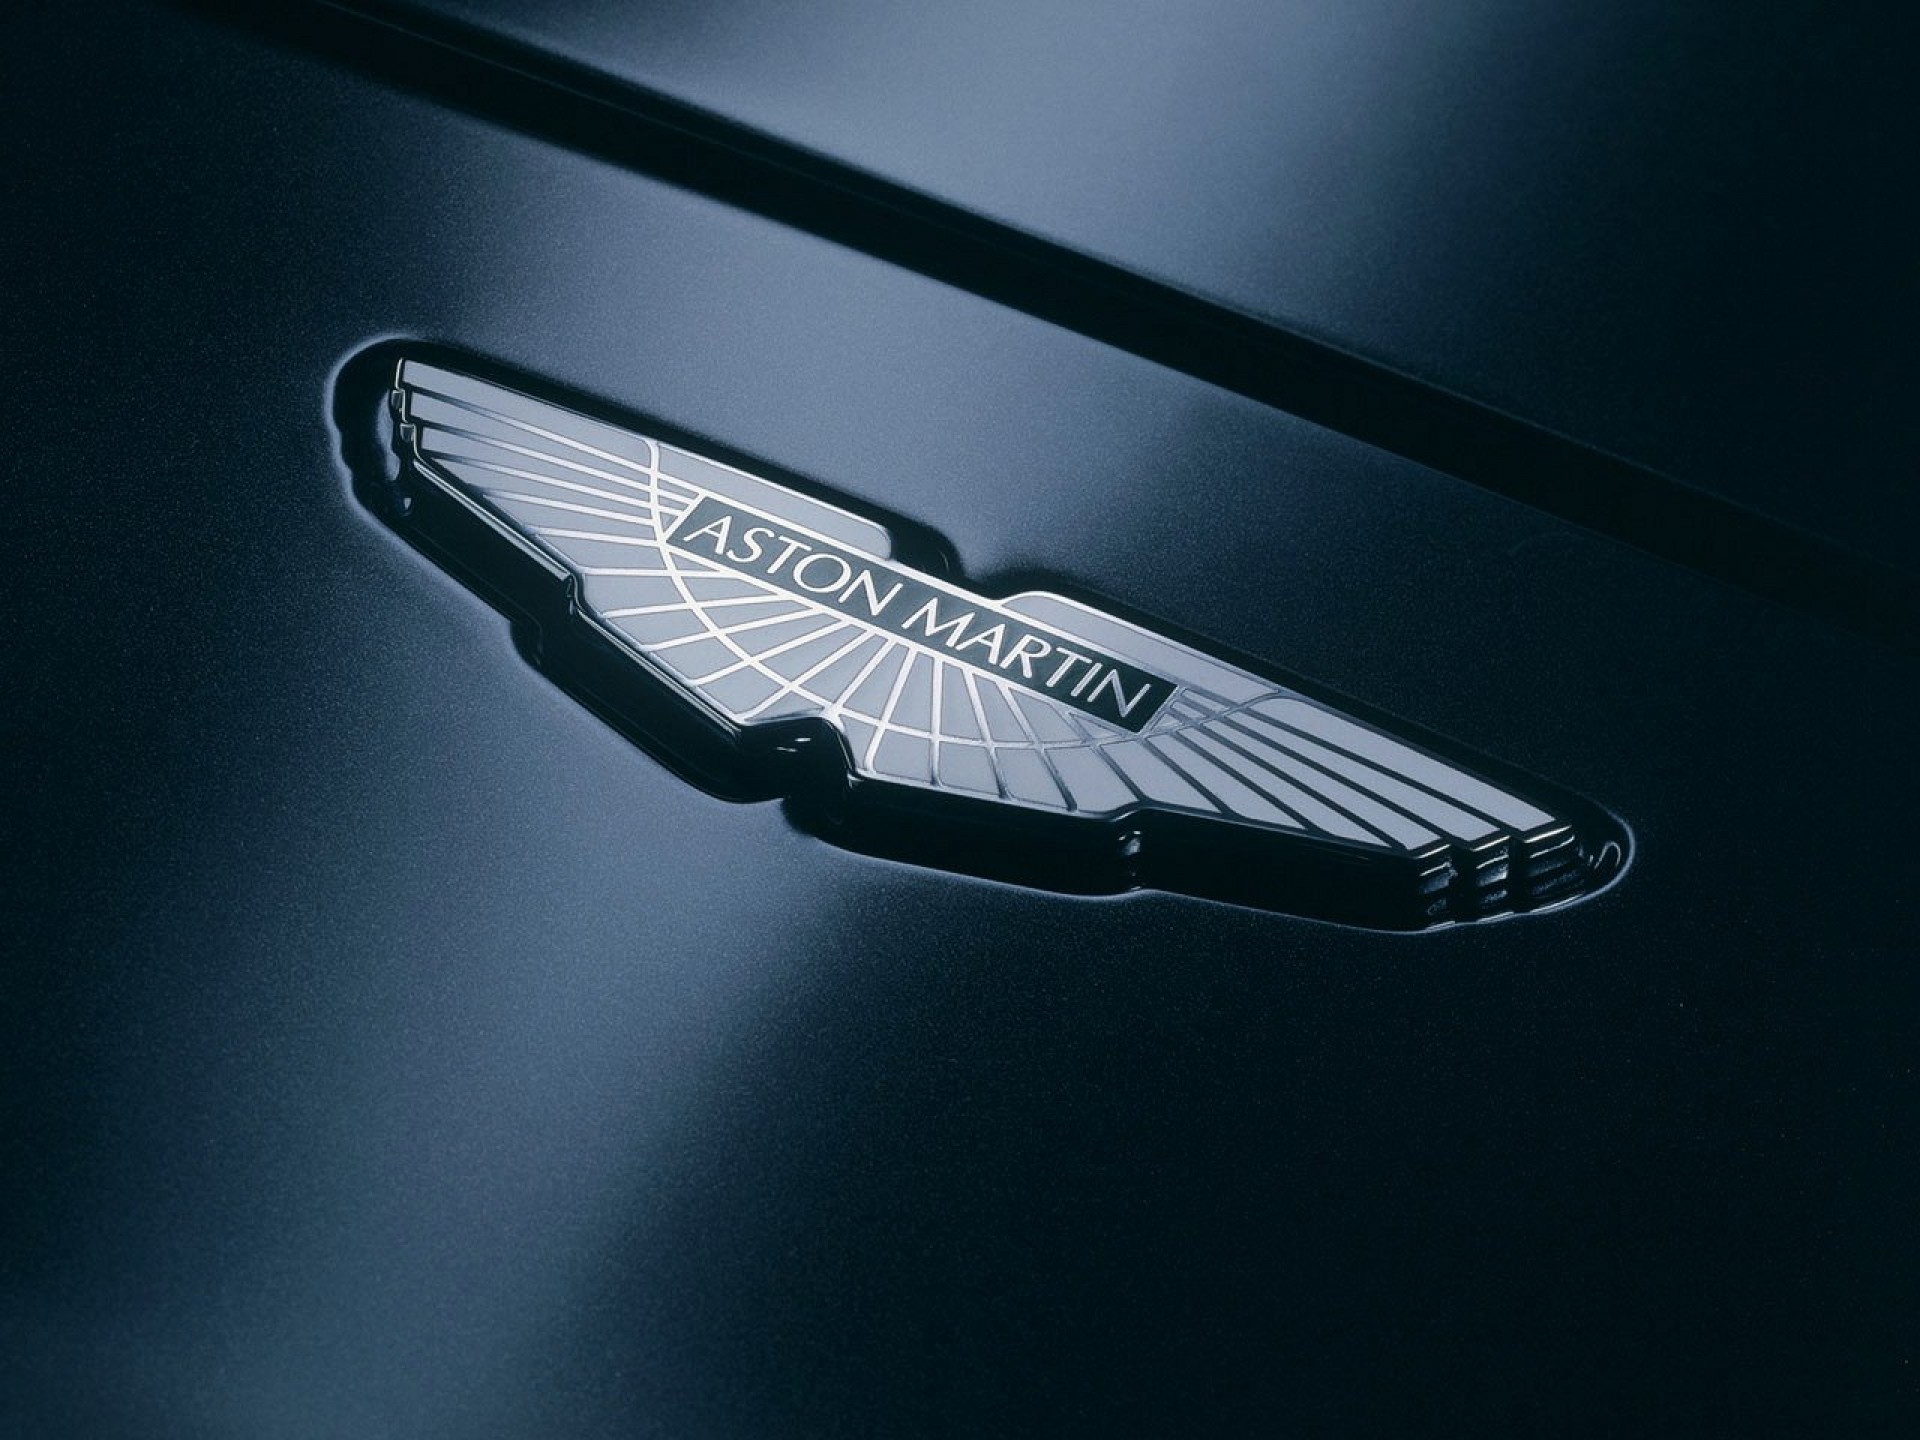 Aston martin logo wallpaper